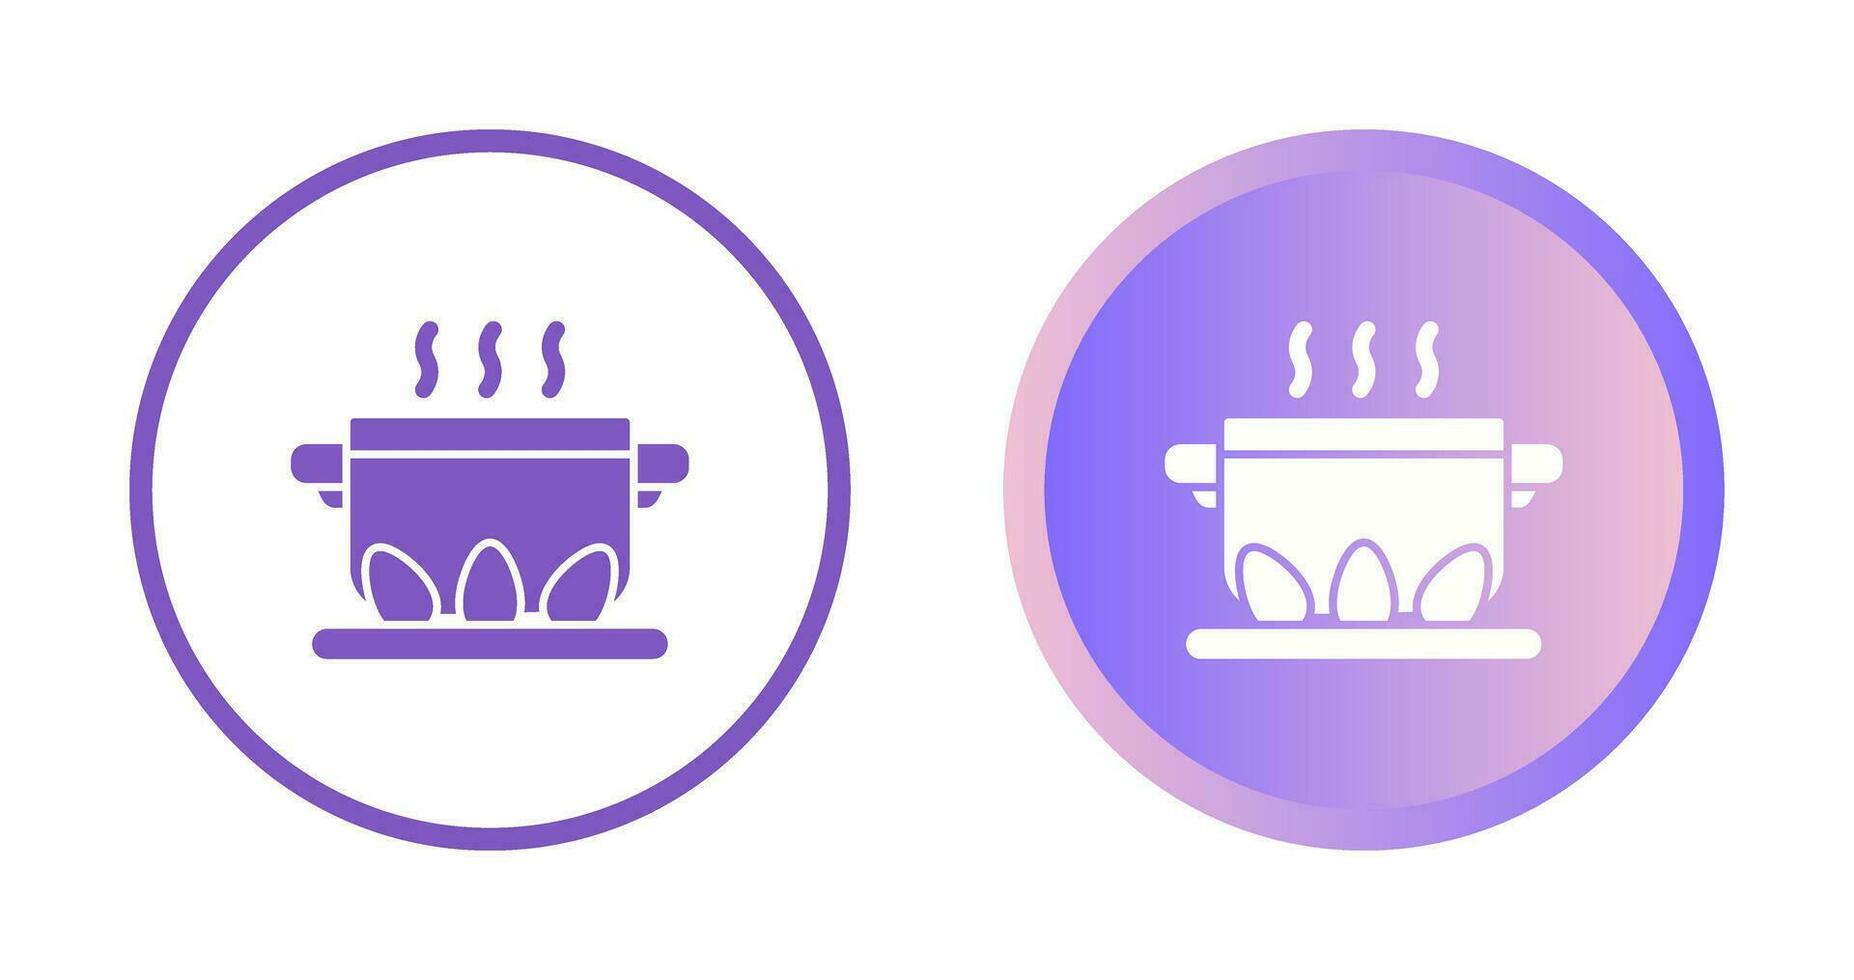 matlagning vektor ikon